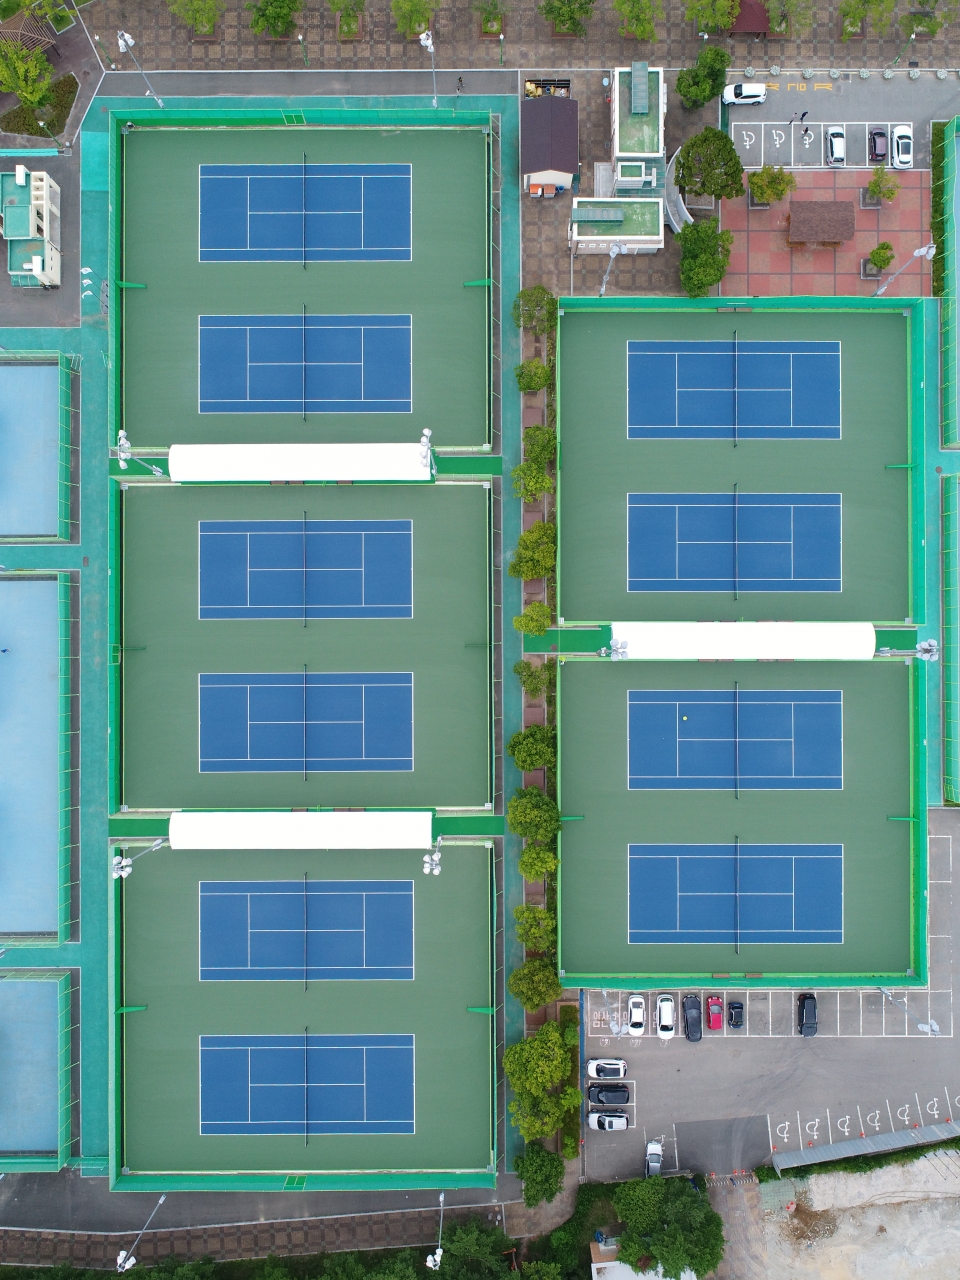 울산시는 오는 2021년 전국체전을 대비하고 테니스장 이용객들의 경기력 향상을 지원하기 위해 지난 3월 착공했던 울산문수테니스경기장 코트 교체 공사를 최근 마무리했다.